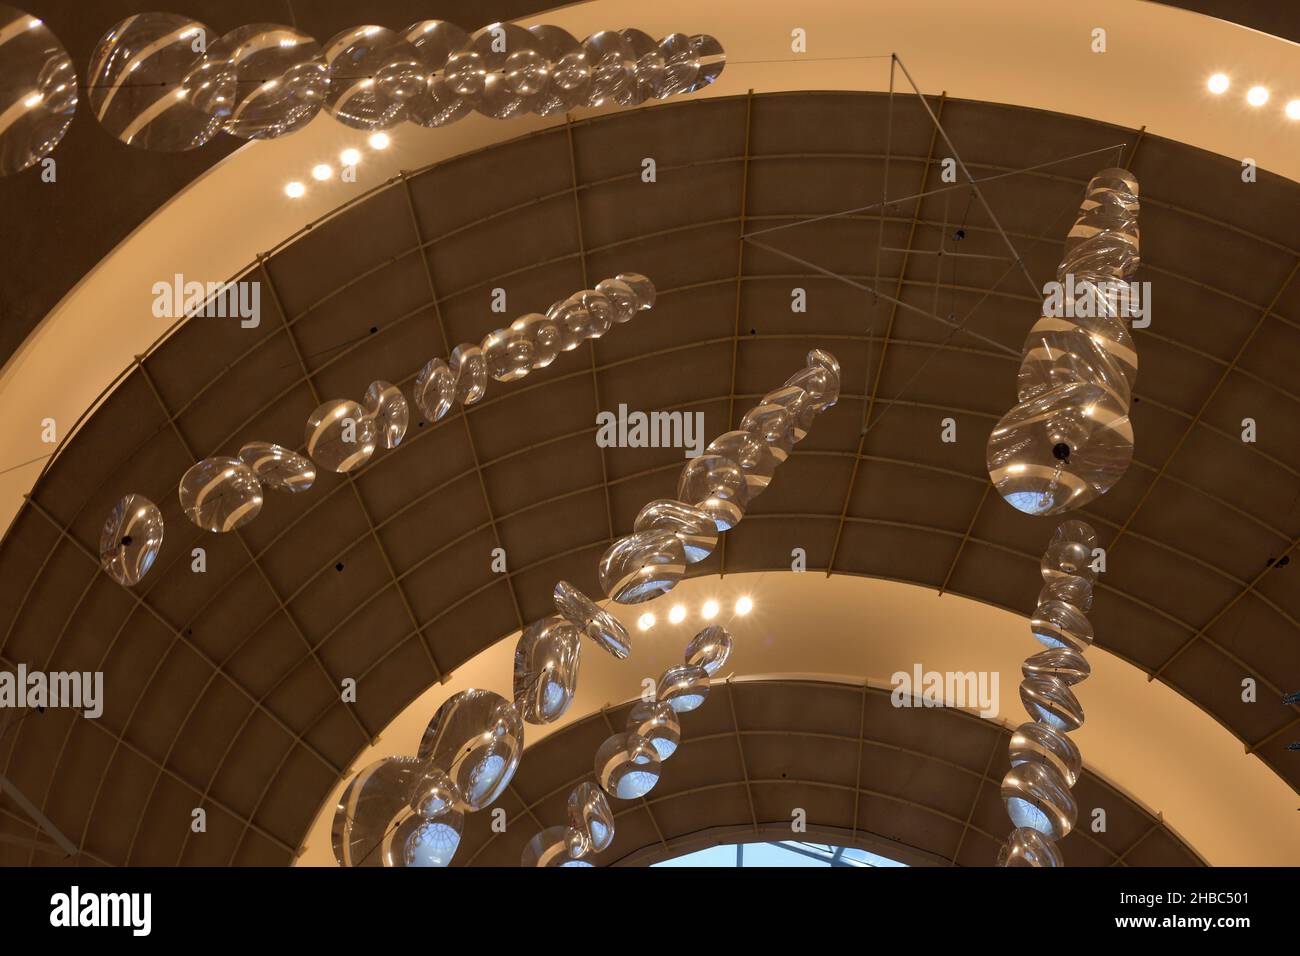 Decorazioni natalizie lucenti a tema fata appese sul tetto del Dubai Mall, Dubai, Emirati Arabi Uniti, dicembre 2019. Immagine a colori editoriale. Foto Stock